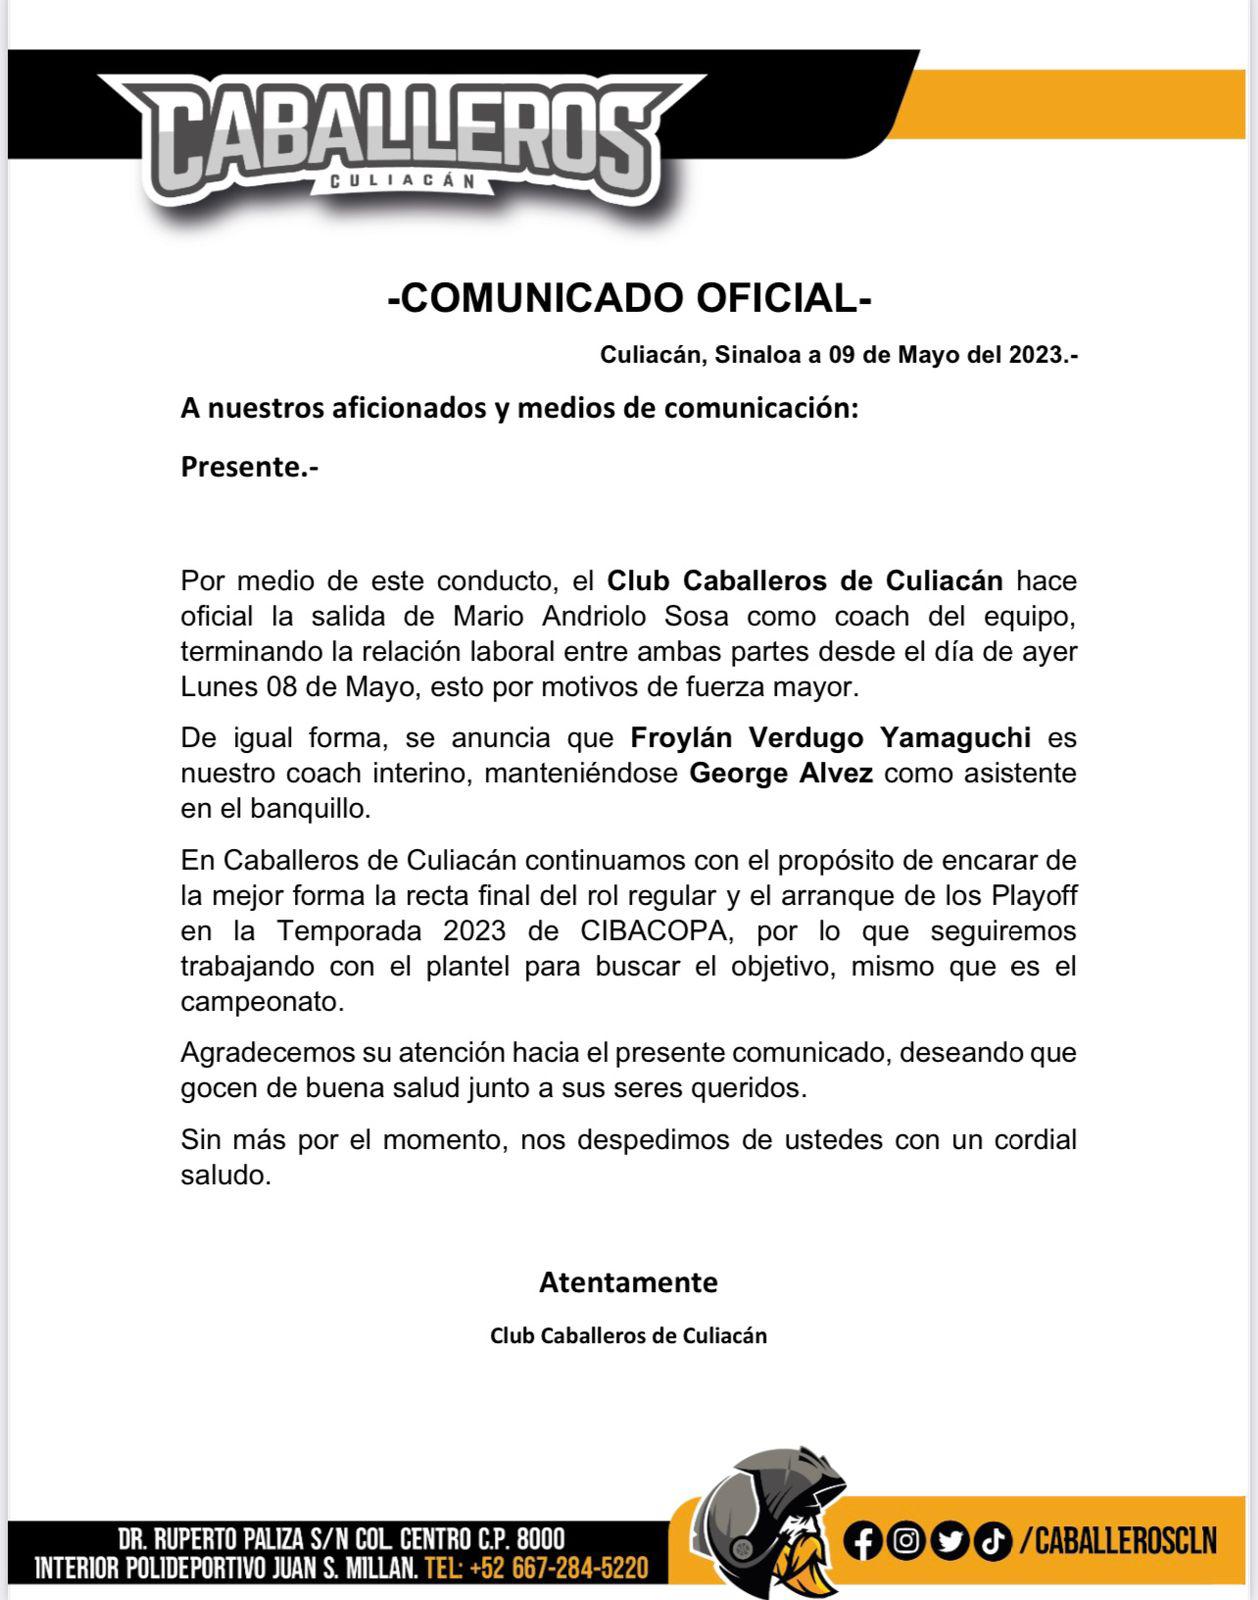 $!Caballeros de Culiacán anuncia el cese del coach Mario Andriolo